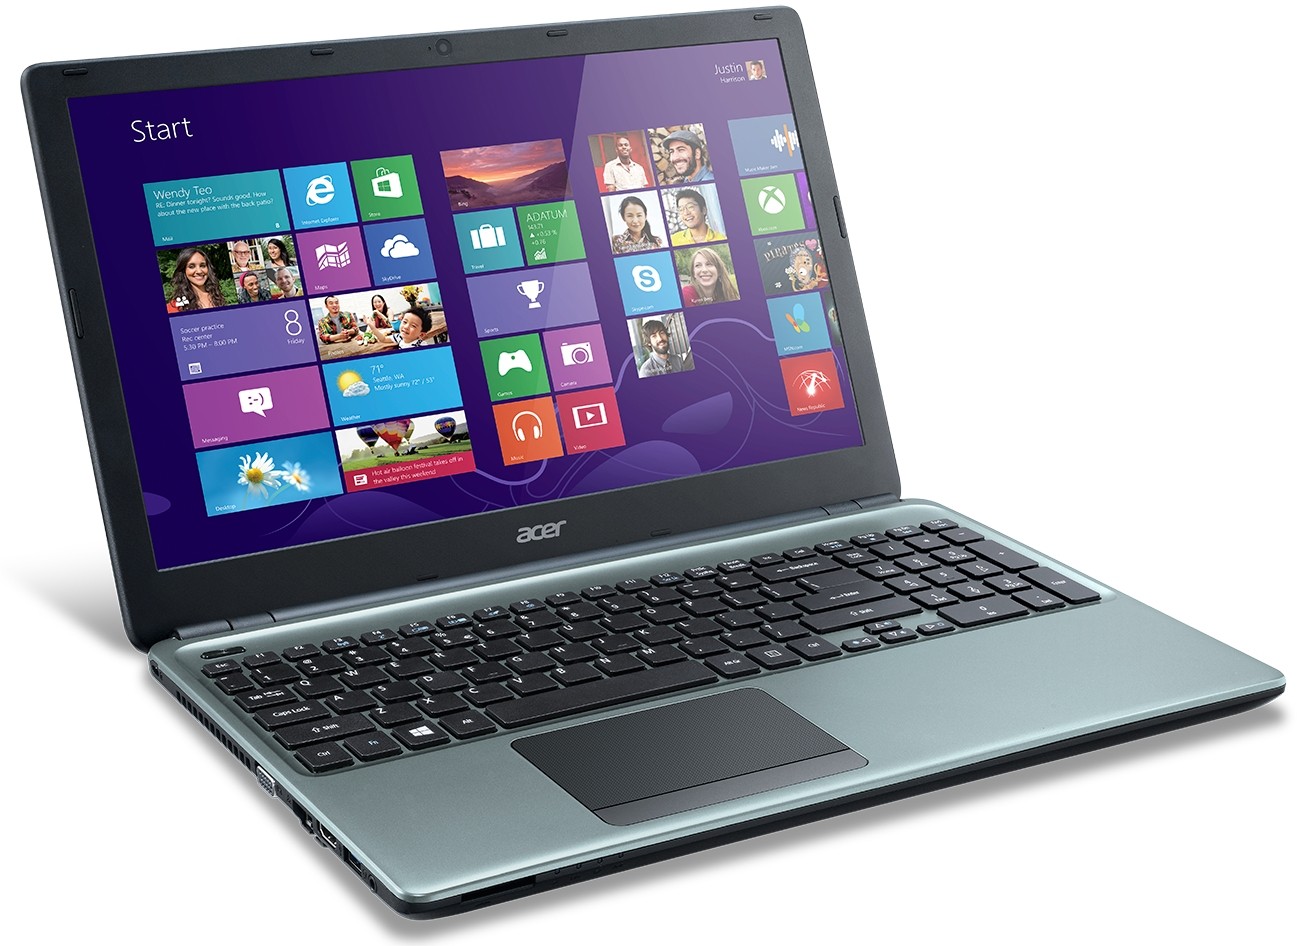 Купить Ноутбук Acer E1 570g